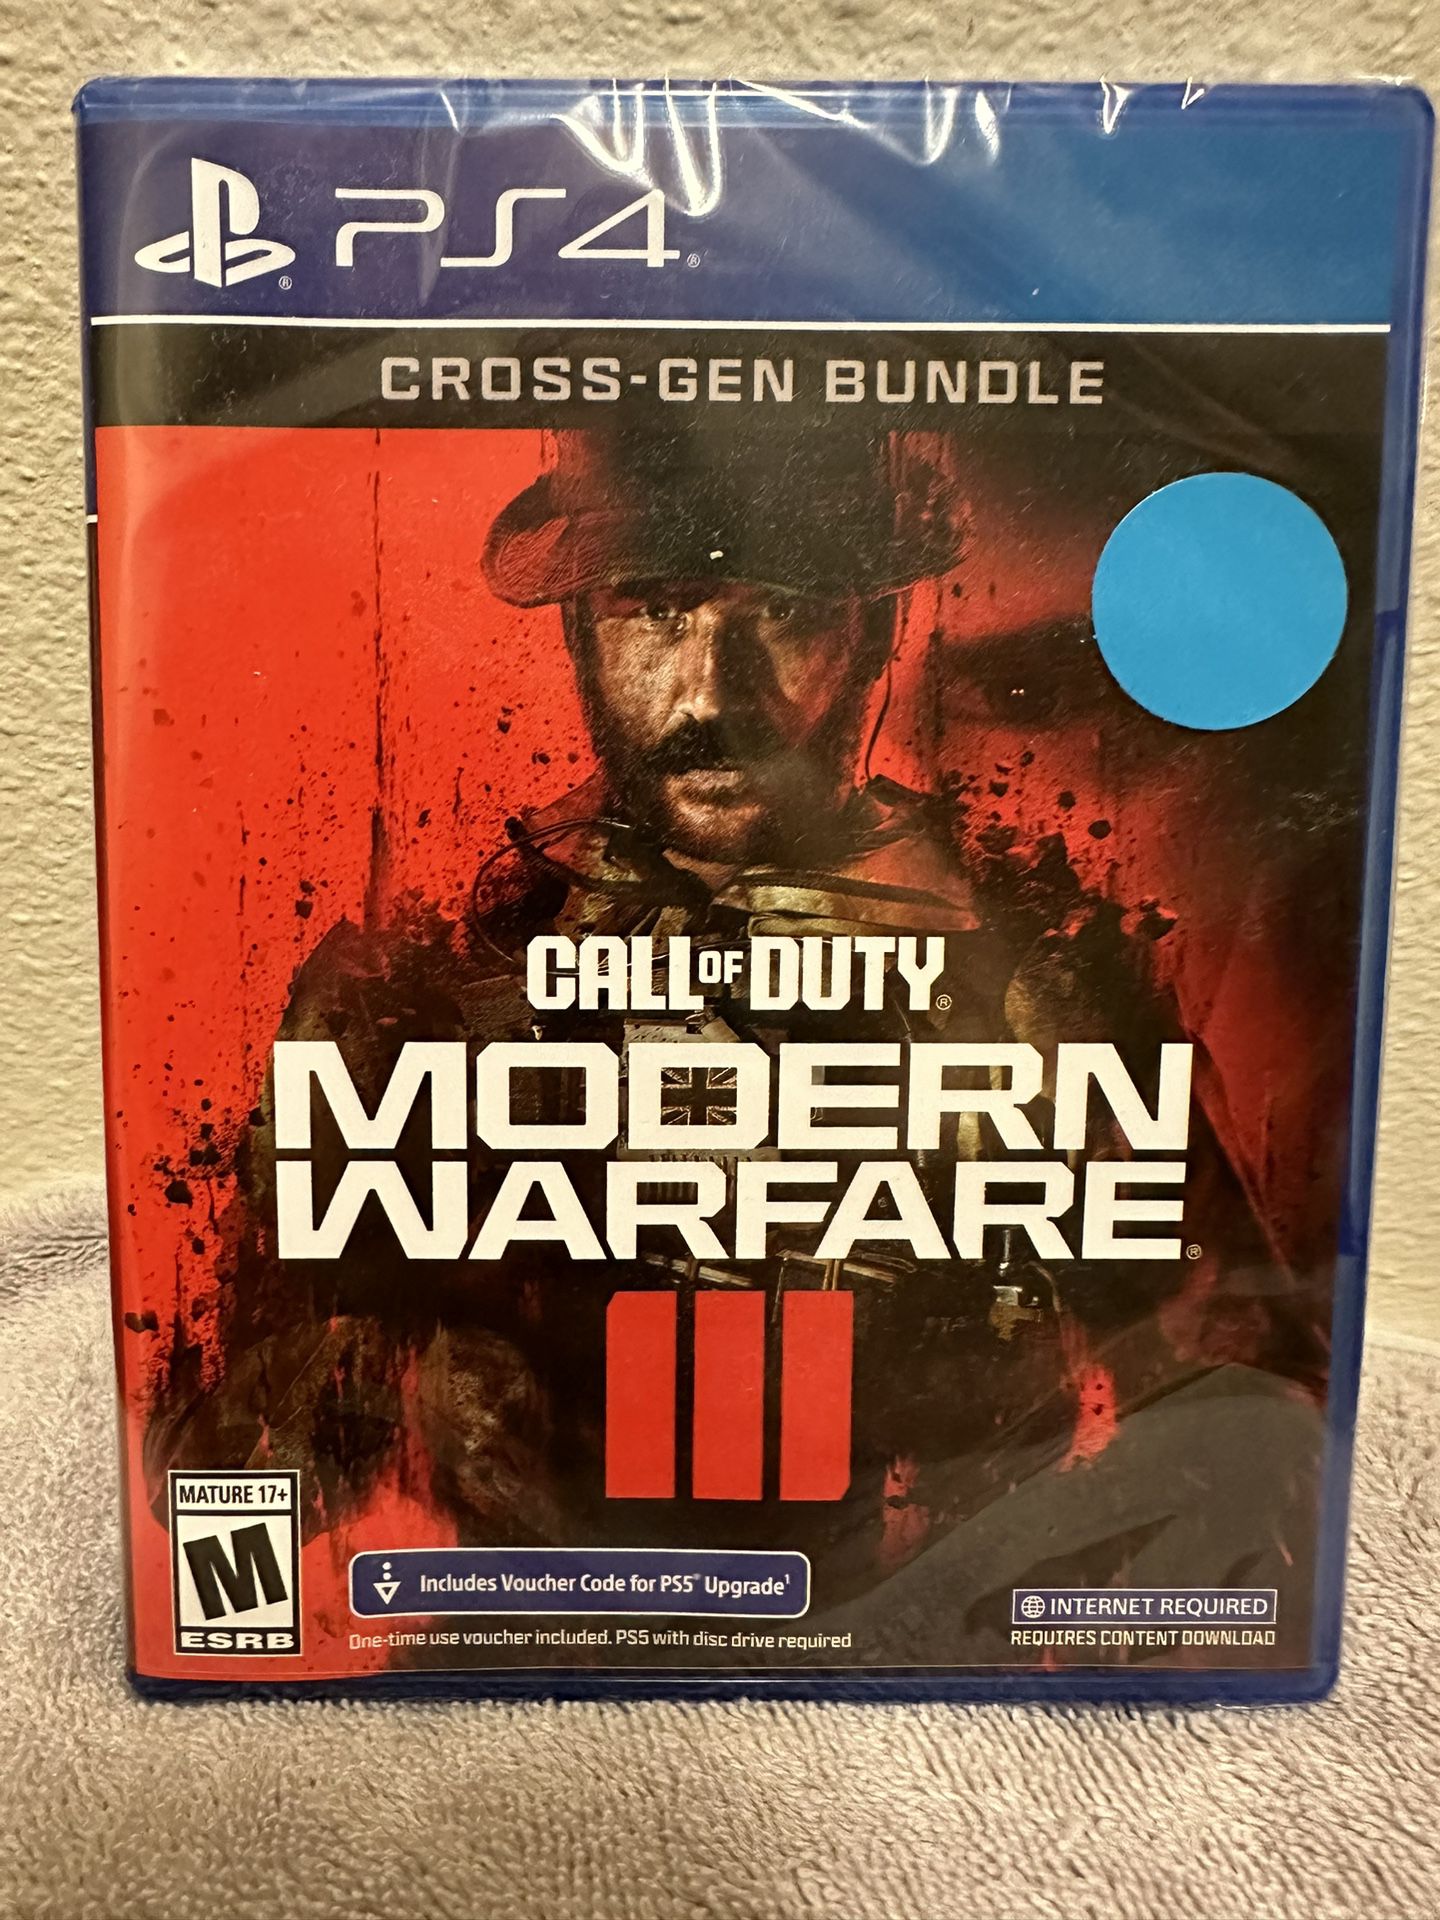 Call of duty: Modern Warfare 3 (cross-gen bundle)